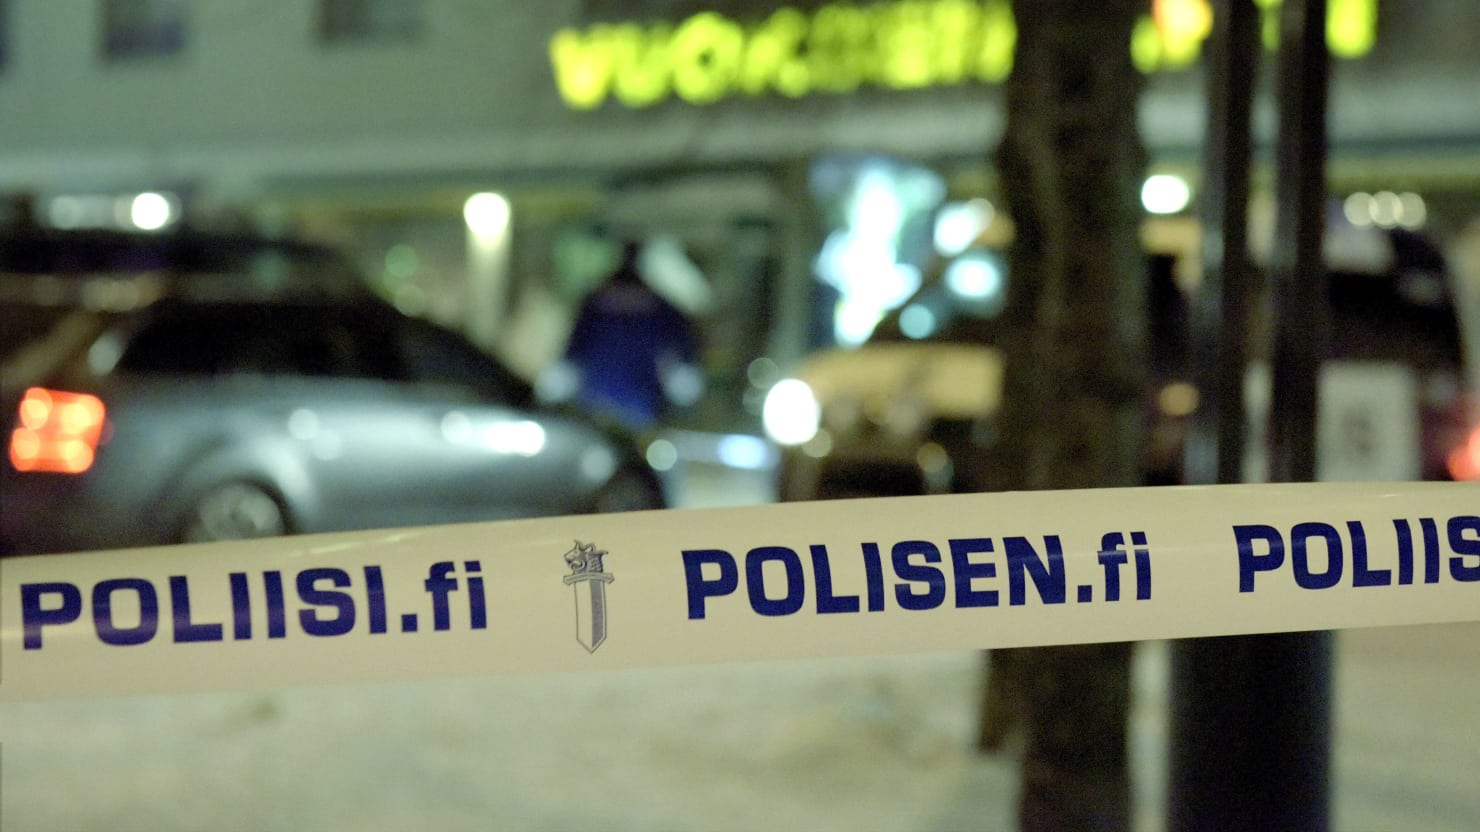 Φινλανδία: Τρεις έφηβοι καταδικάστηκαν γιατί ξυλοκόπησαν μέχρι θανάτου έναν πρώην συμμαθητή τους